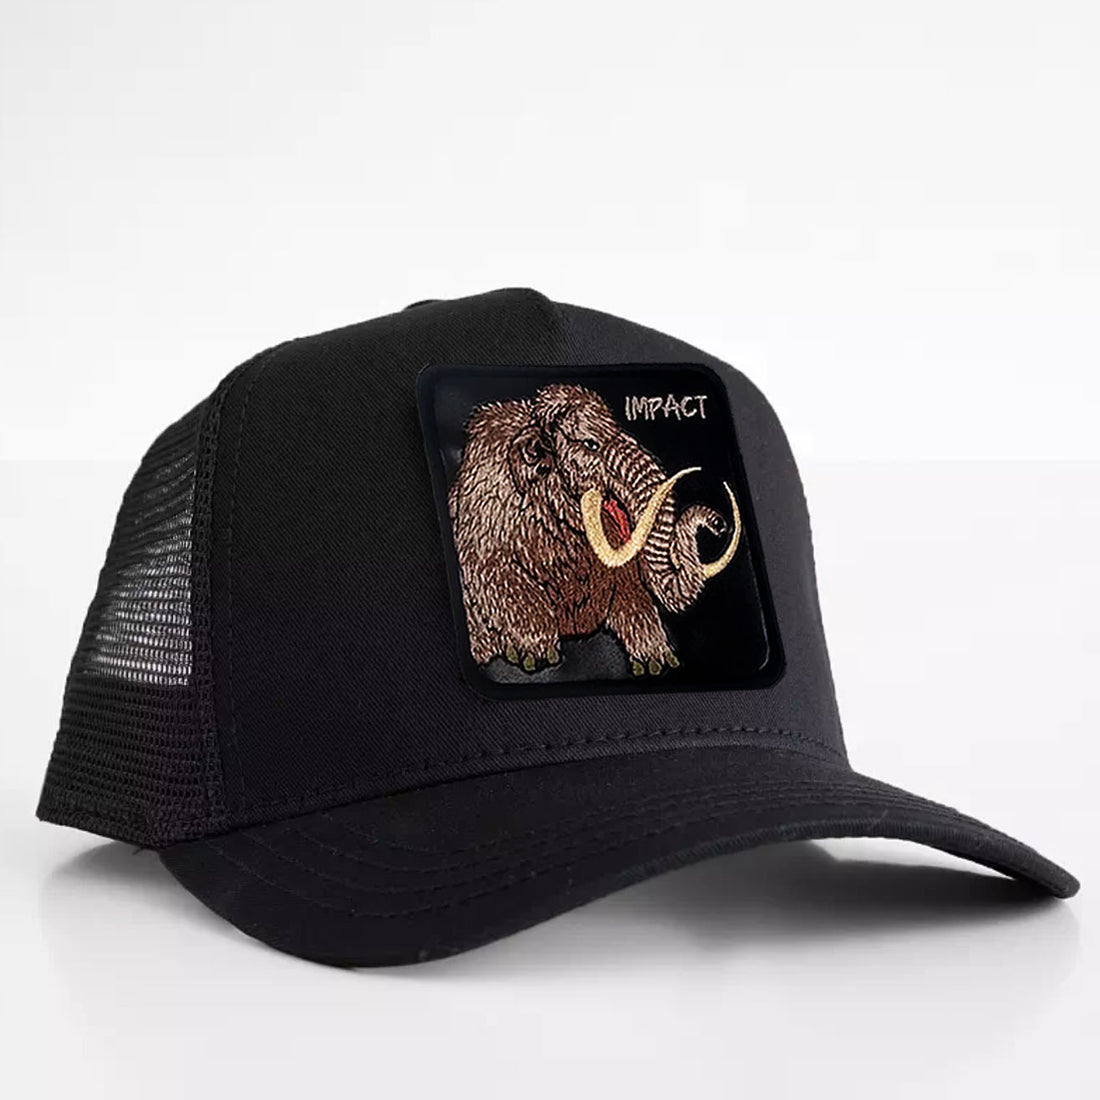 Mammoth - "Impact" Trucker Hat